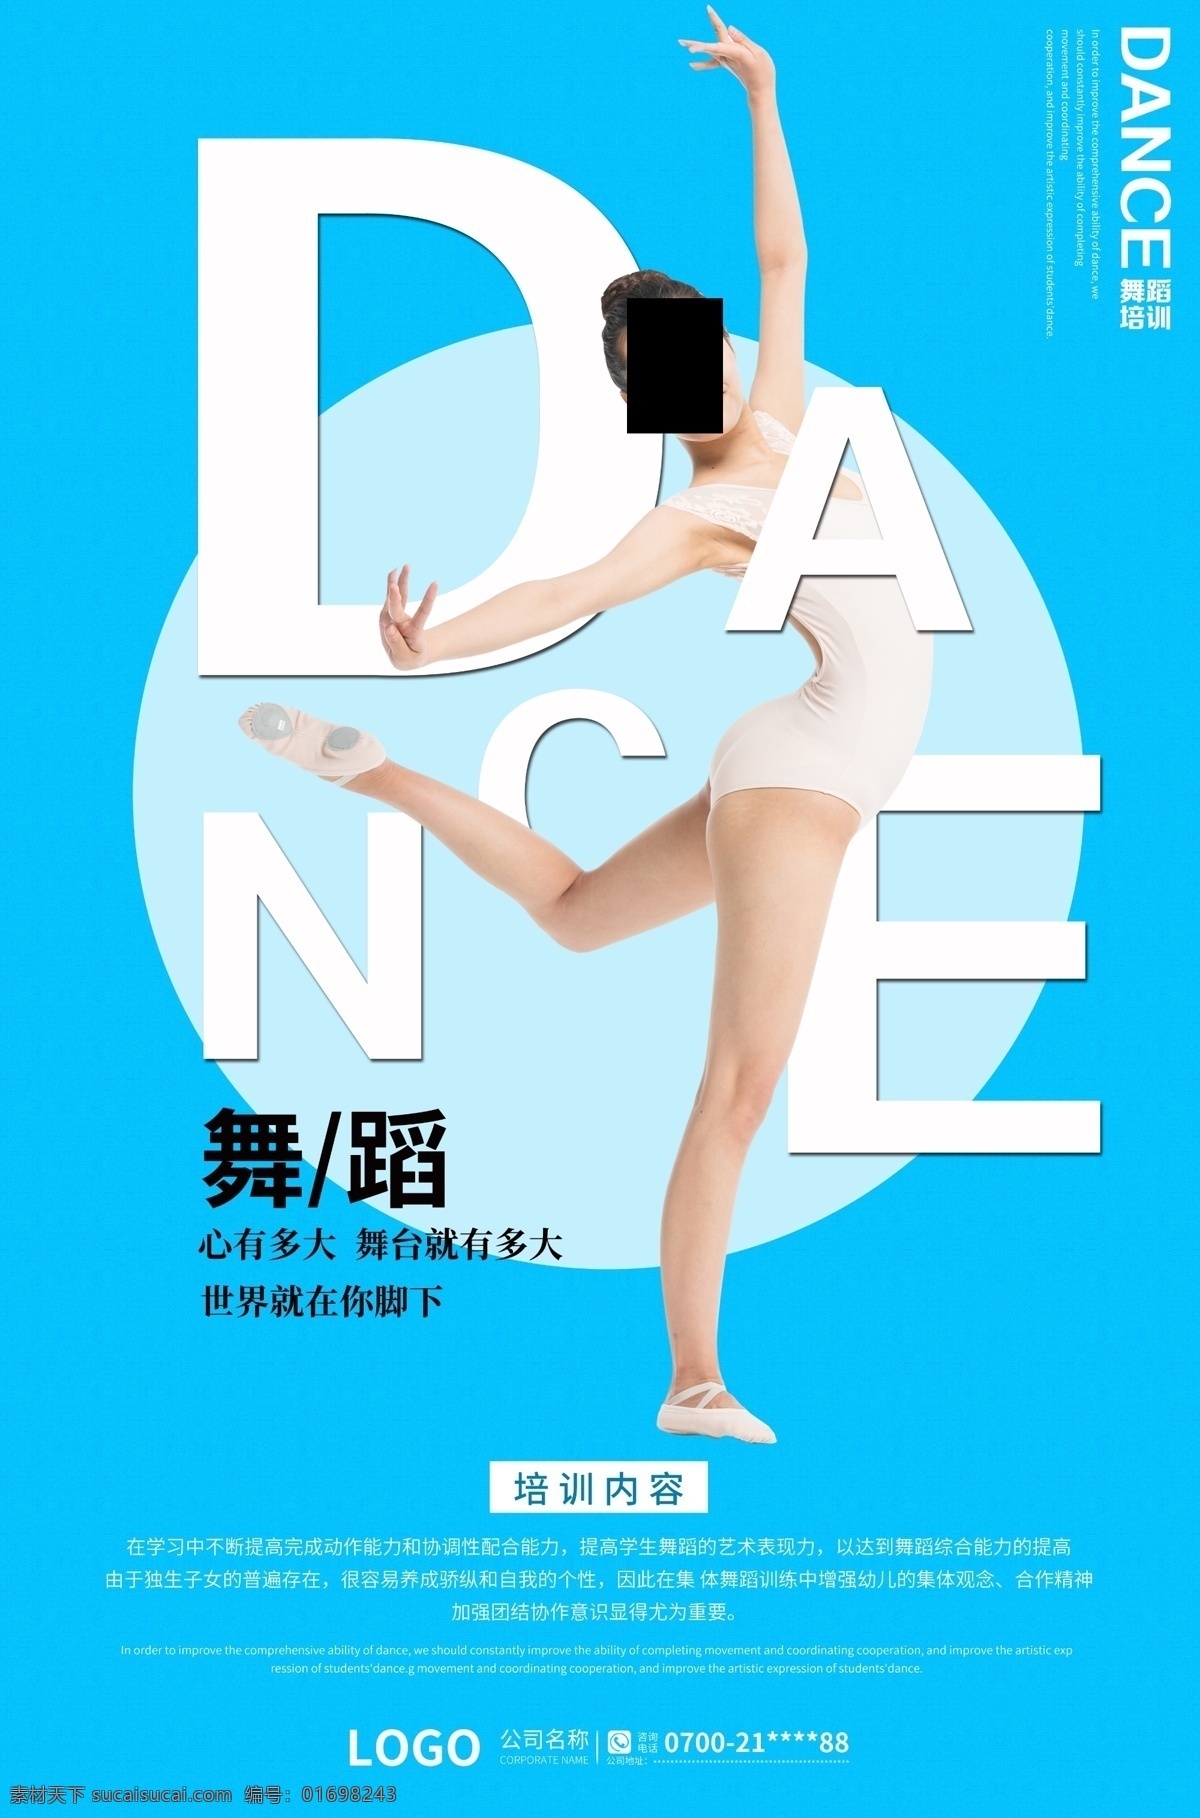 舞蹈 培训 海报 蓝色 背景 时尚 国际舞蹈 简约背景 蓝色背景 舞蹈培训 舞蹈宣传海报 招生海报 中国舞蹈